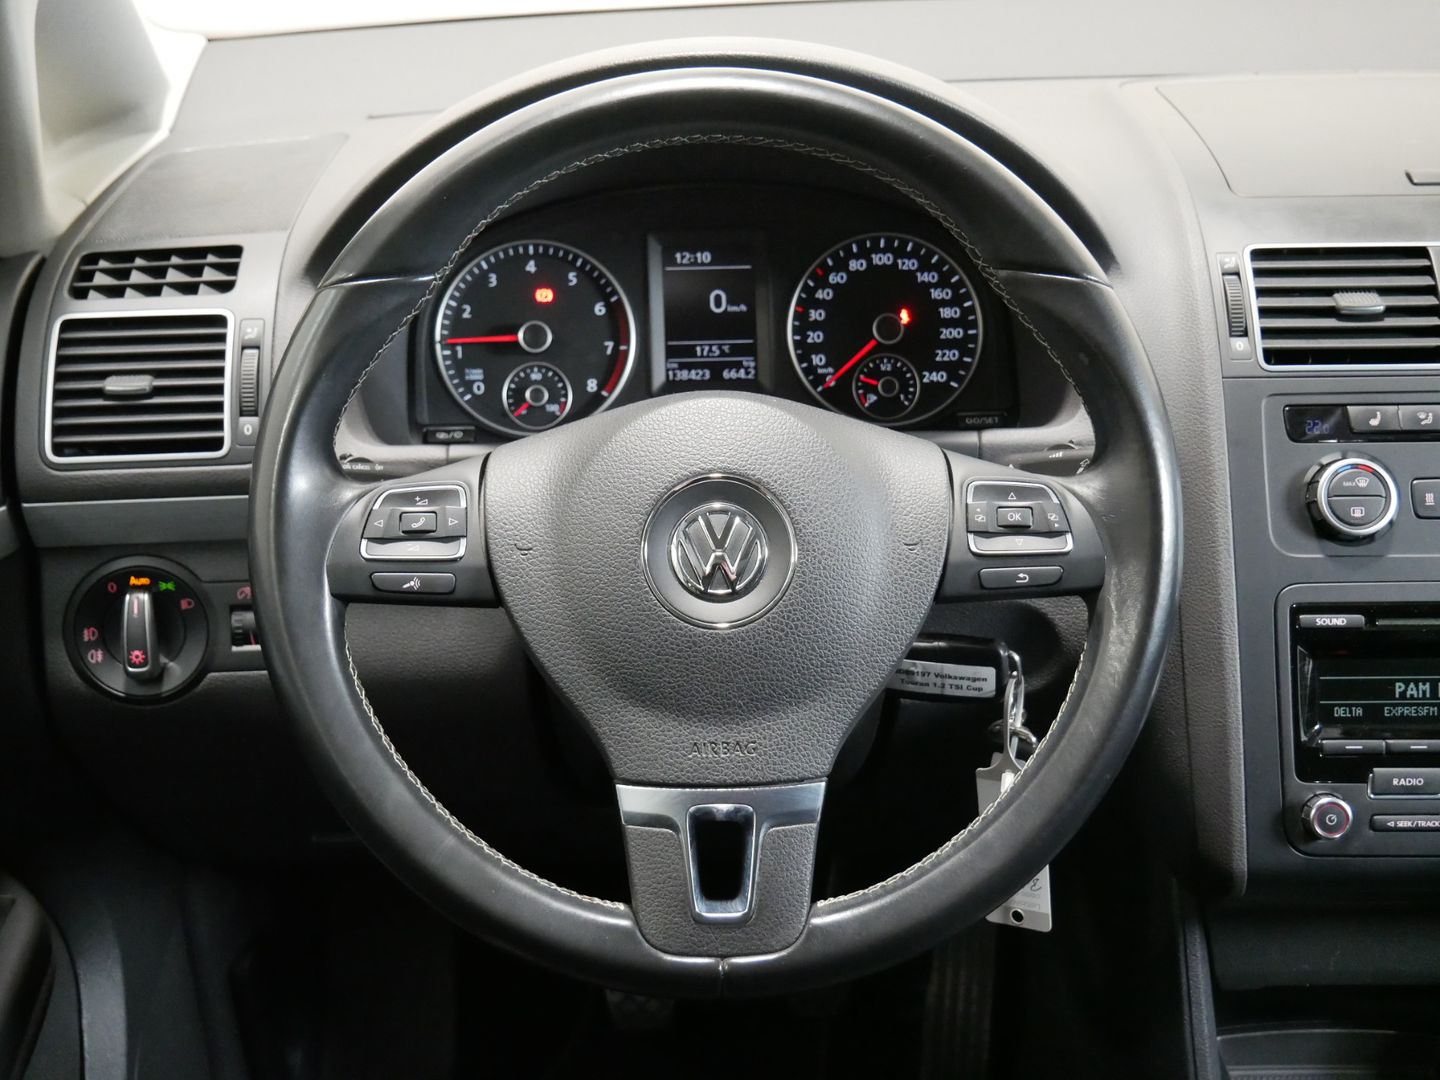 Volkswagen Touran 1.2 TSI 81 kW Comfort